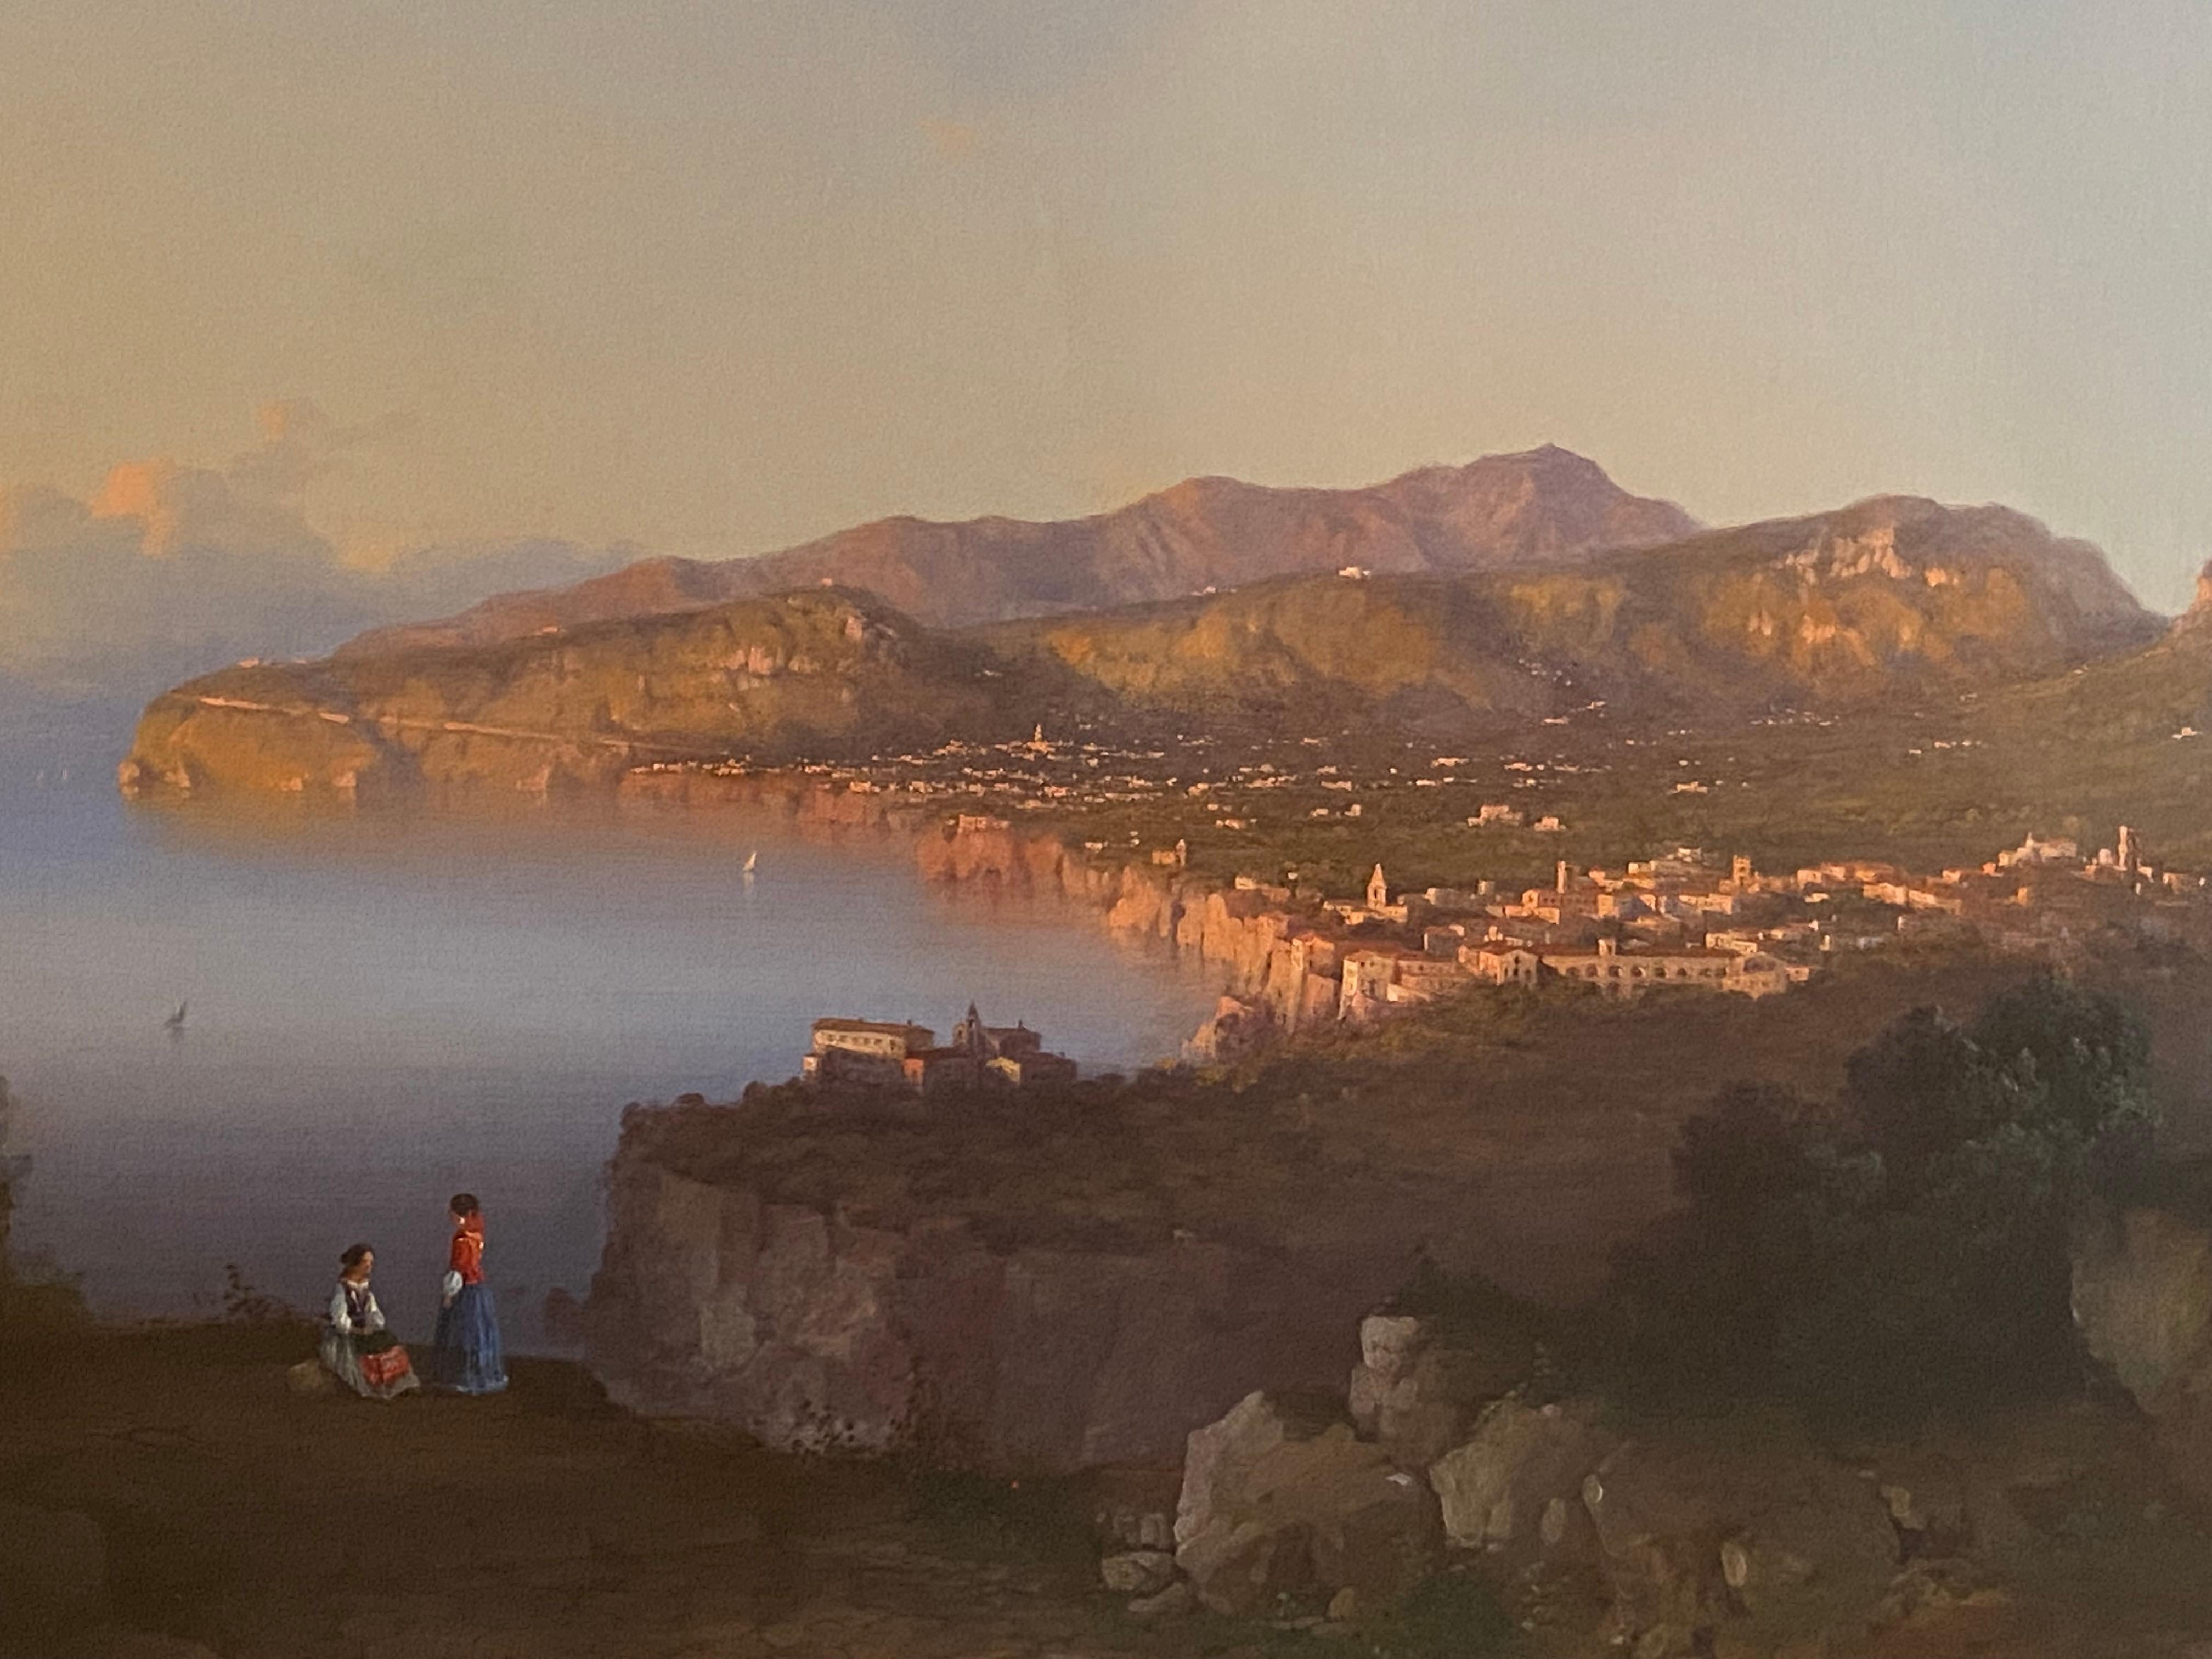 Parnoramische Ansicht der italienischen Schule von Sorrent, beschriftet und datiert 1855 (Realismus), Painting, von Unknown